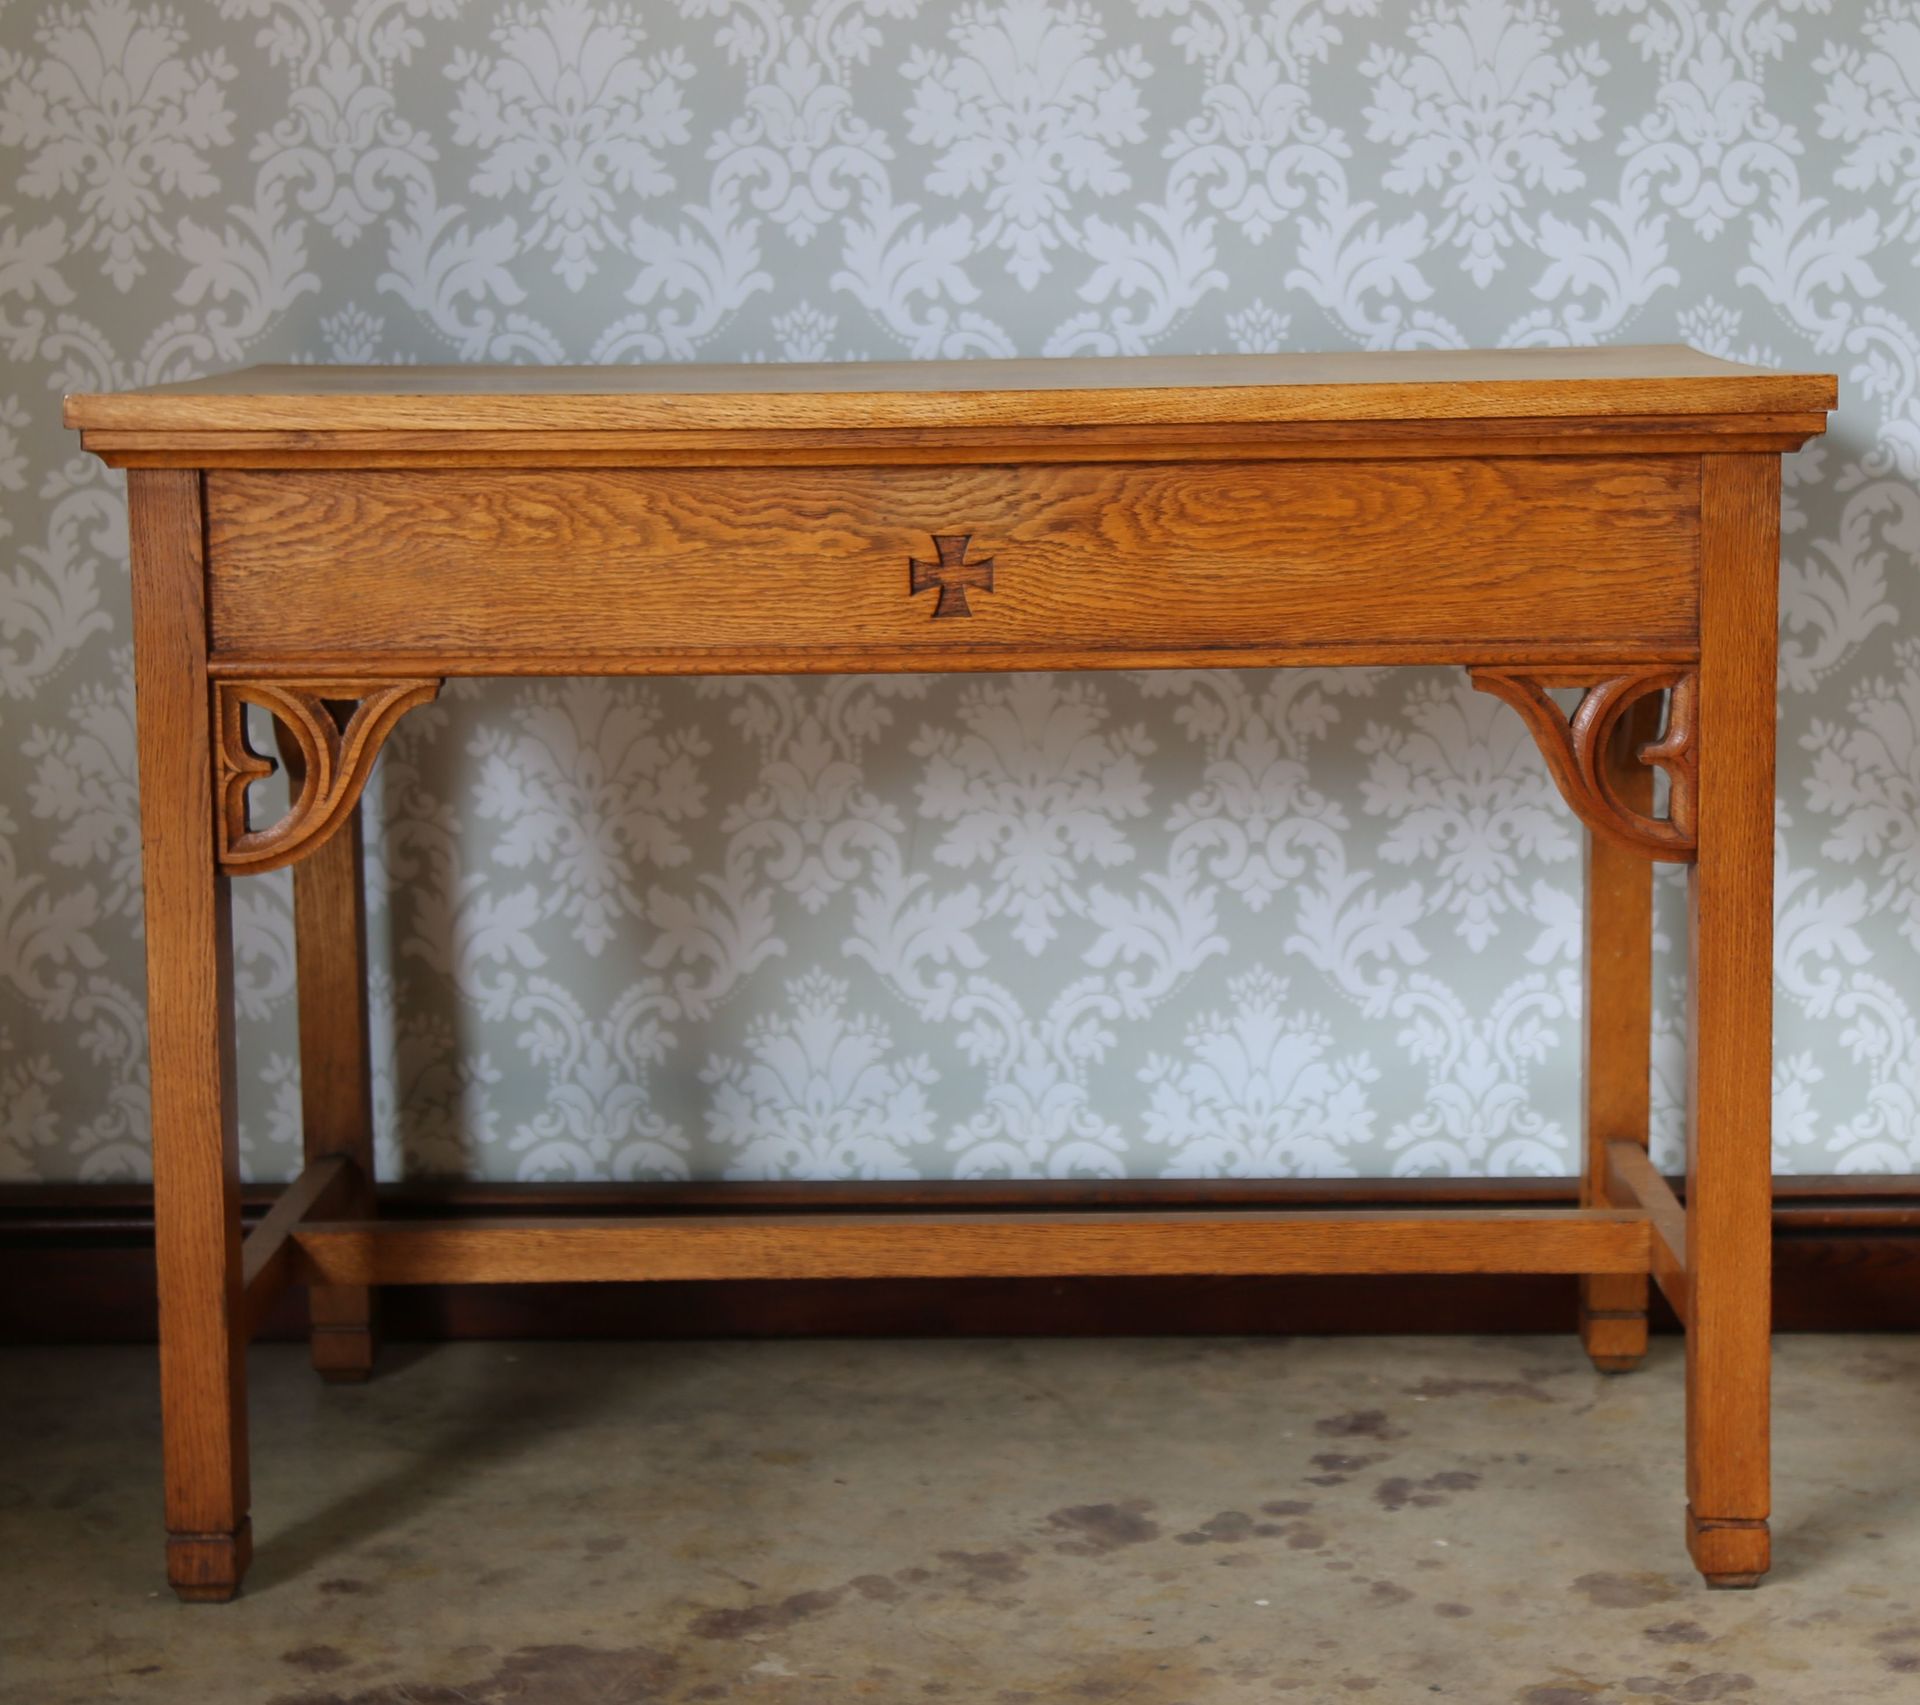 oak side table